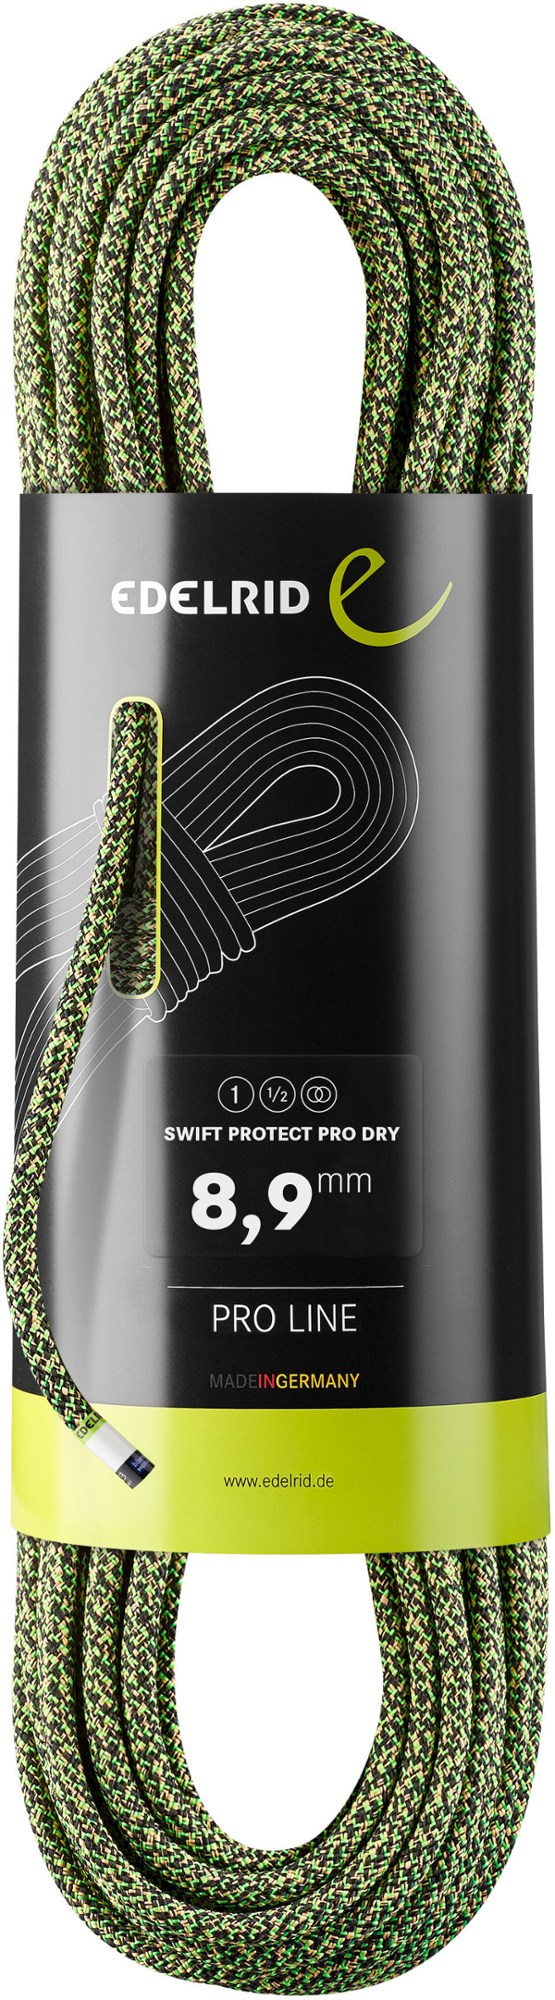 Сухая веревка Swift Protect Pro 8,9 мм x 70 м Edelrid, черный